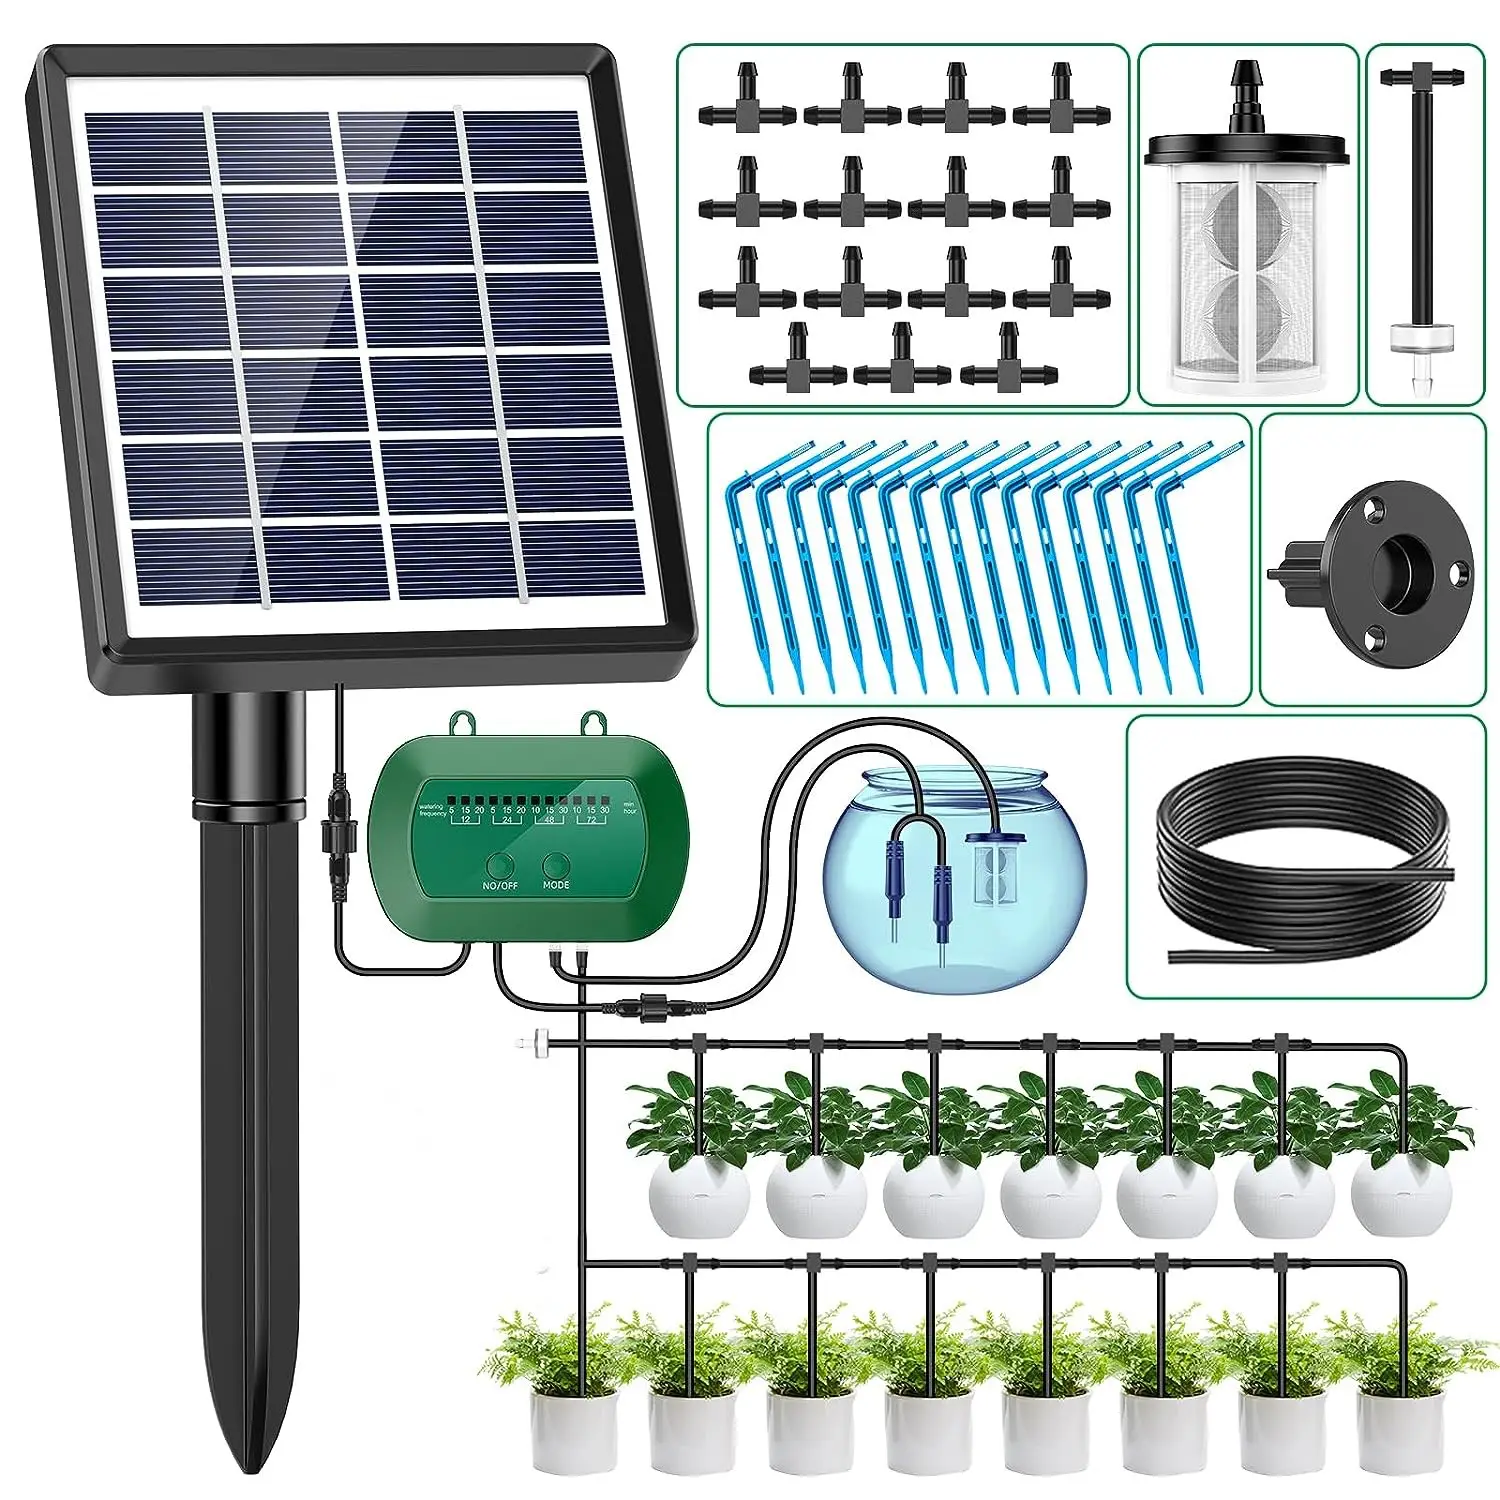 Kit pengontrol Dripper rumah kaca taman, pompa tetes mikro peralatan hidroponik tenaga surya sistem irigasi pengairan otomatis